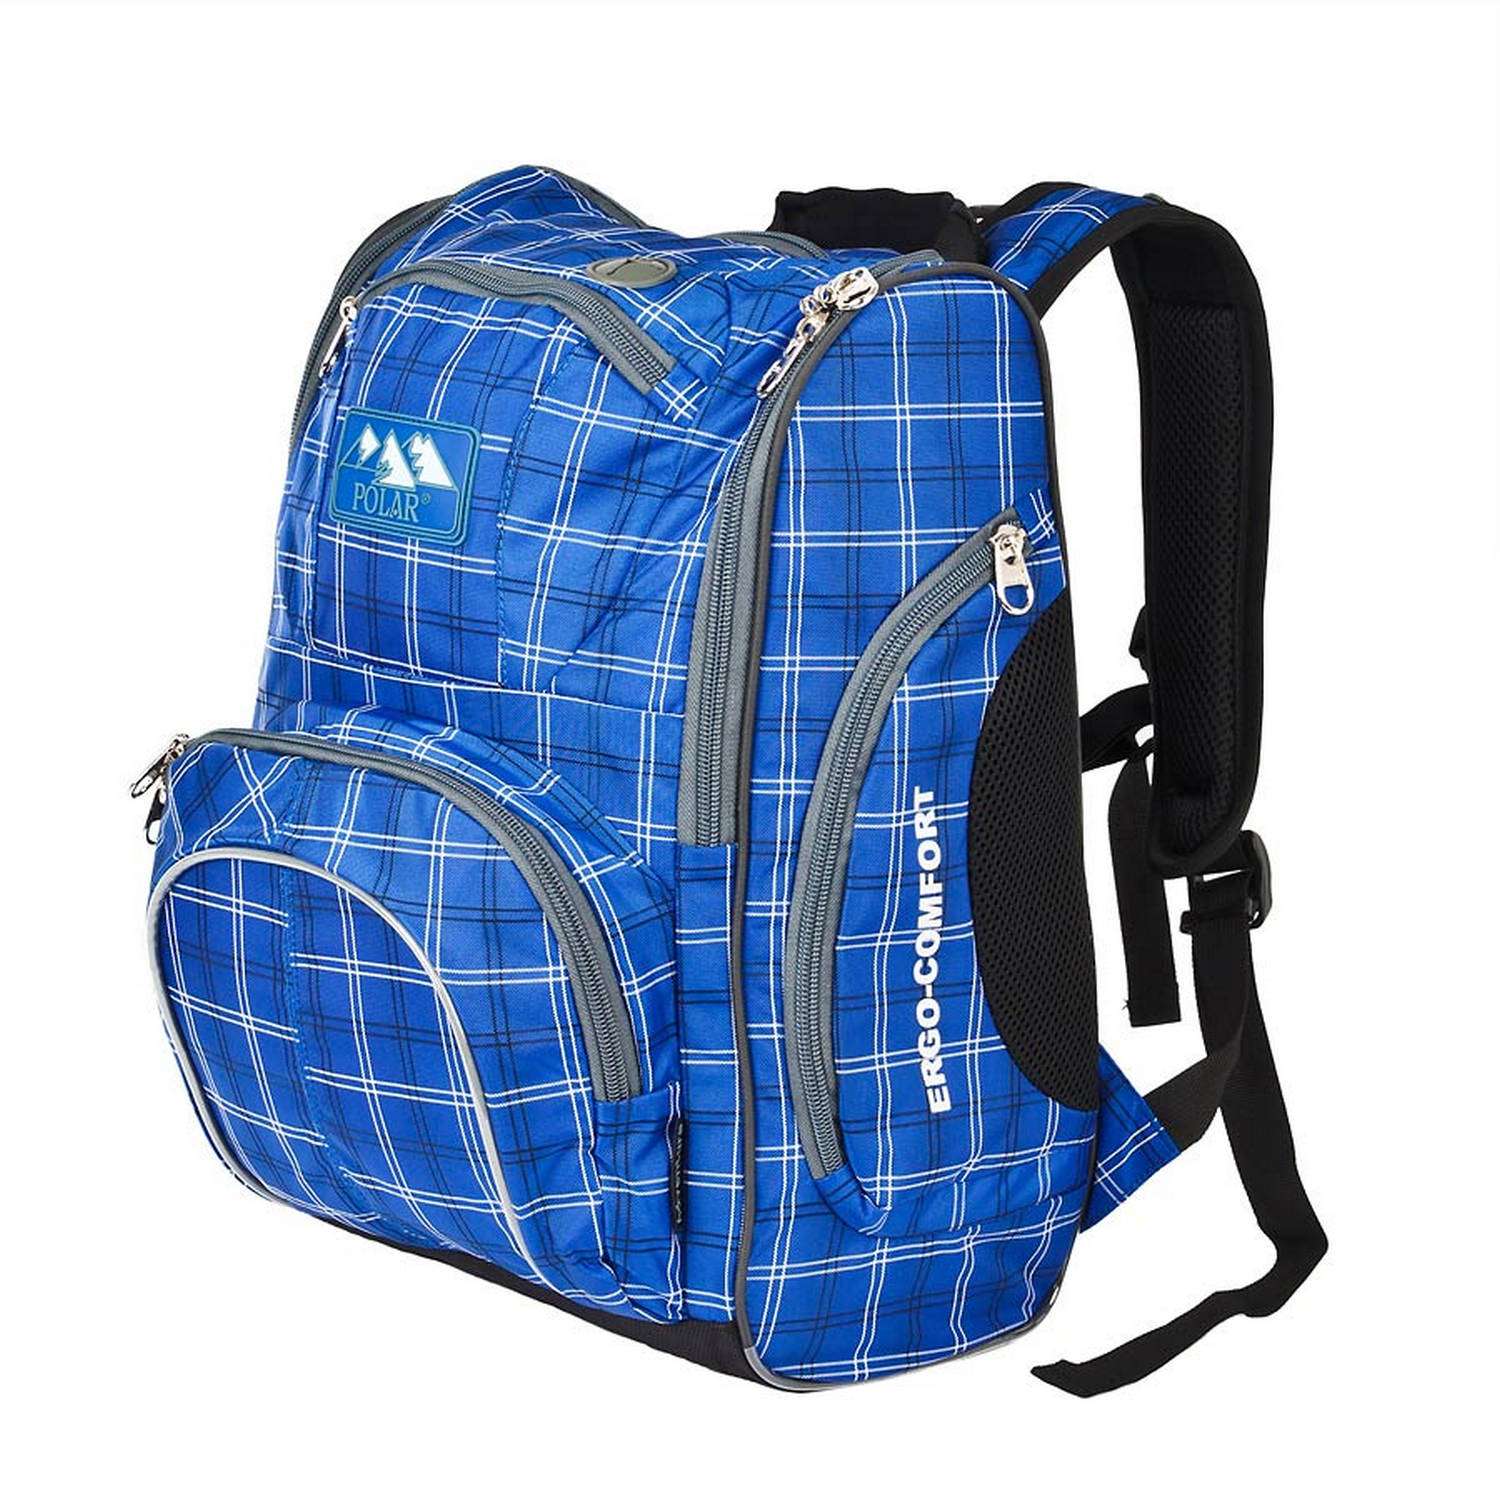 Рюкзак школьный POLAR Городской синий - фото 1